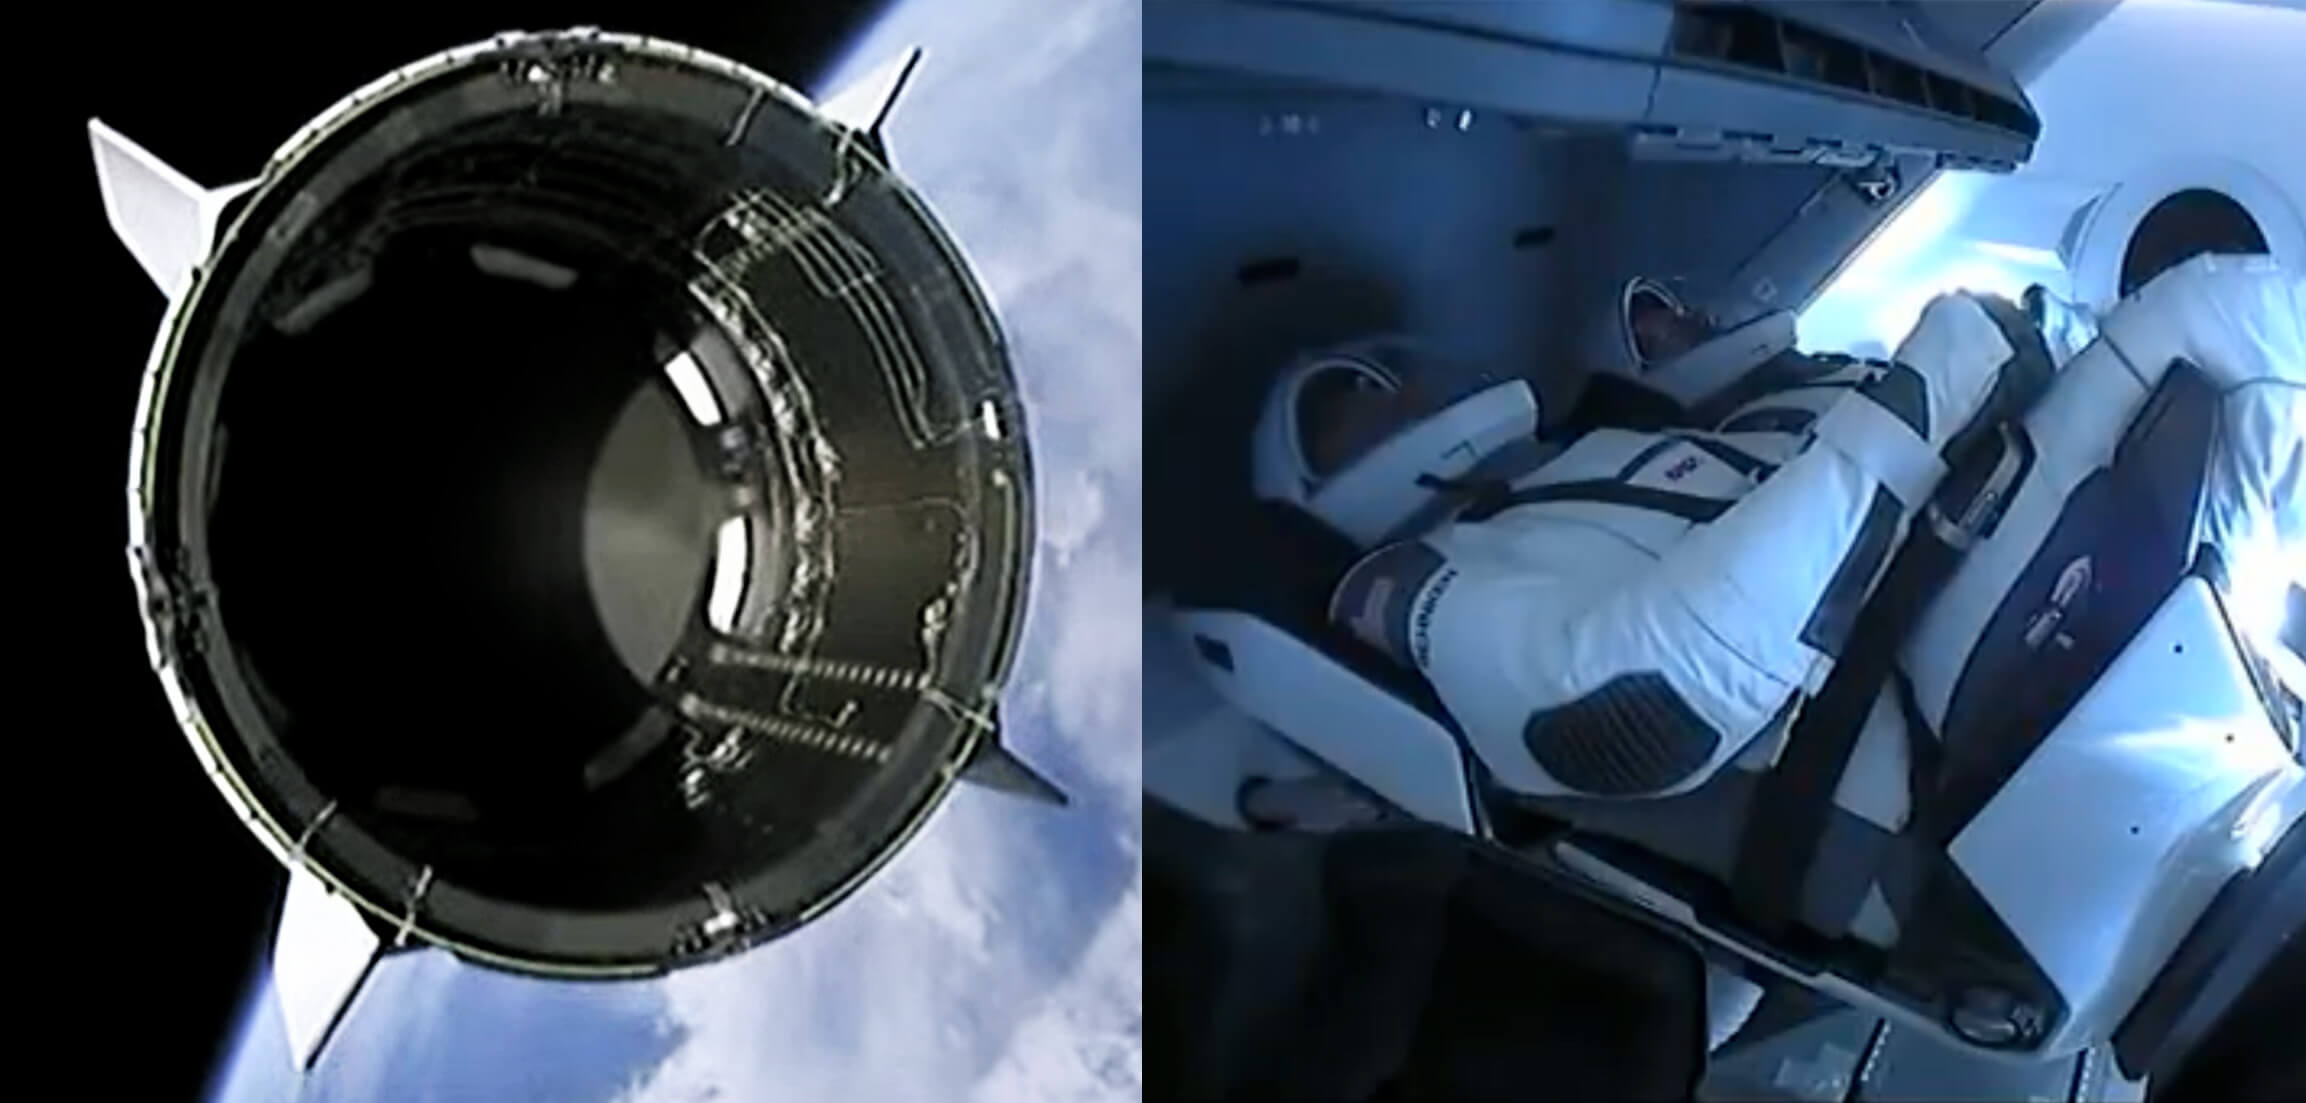 سبيس اكس بنجاح طاقم المركبة الفضائية دراجون إلى المحطة الفضائية الدولية